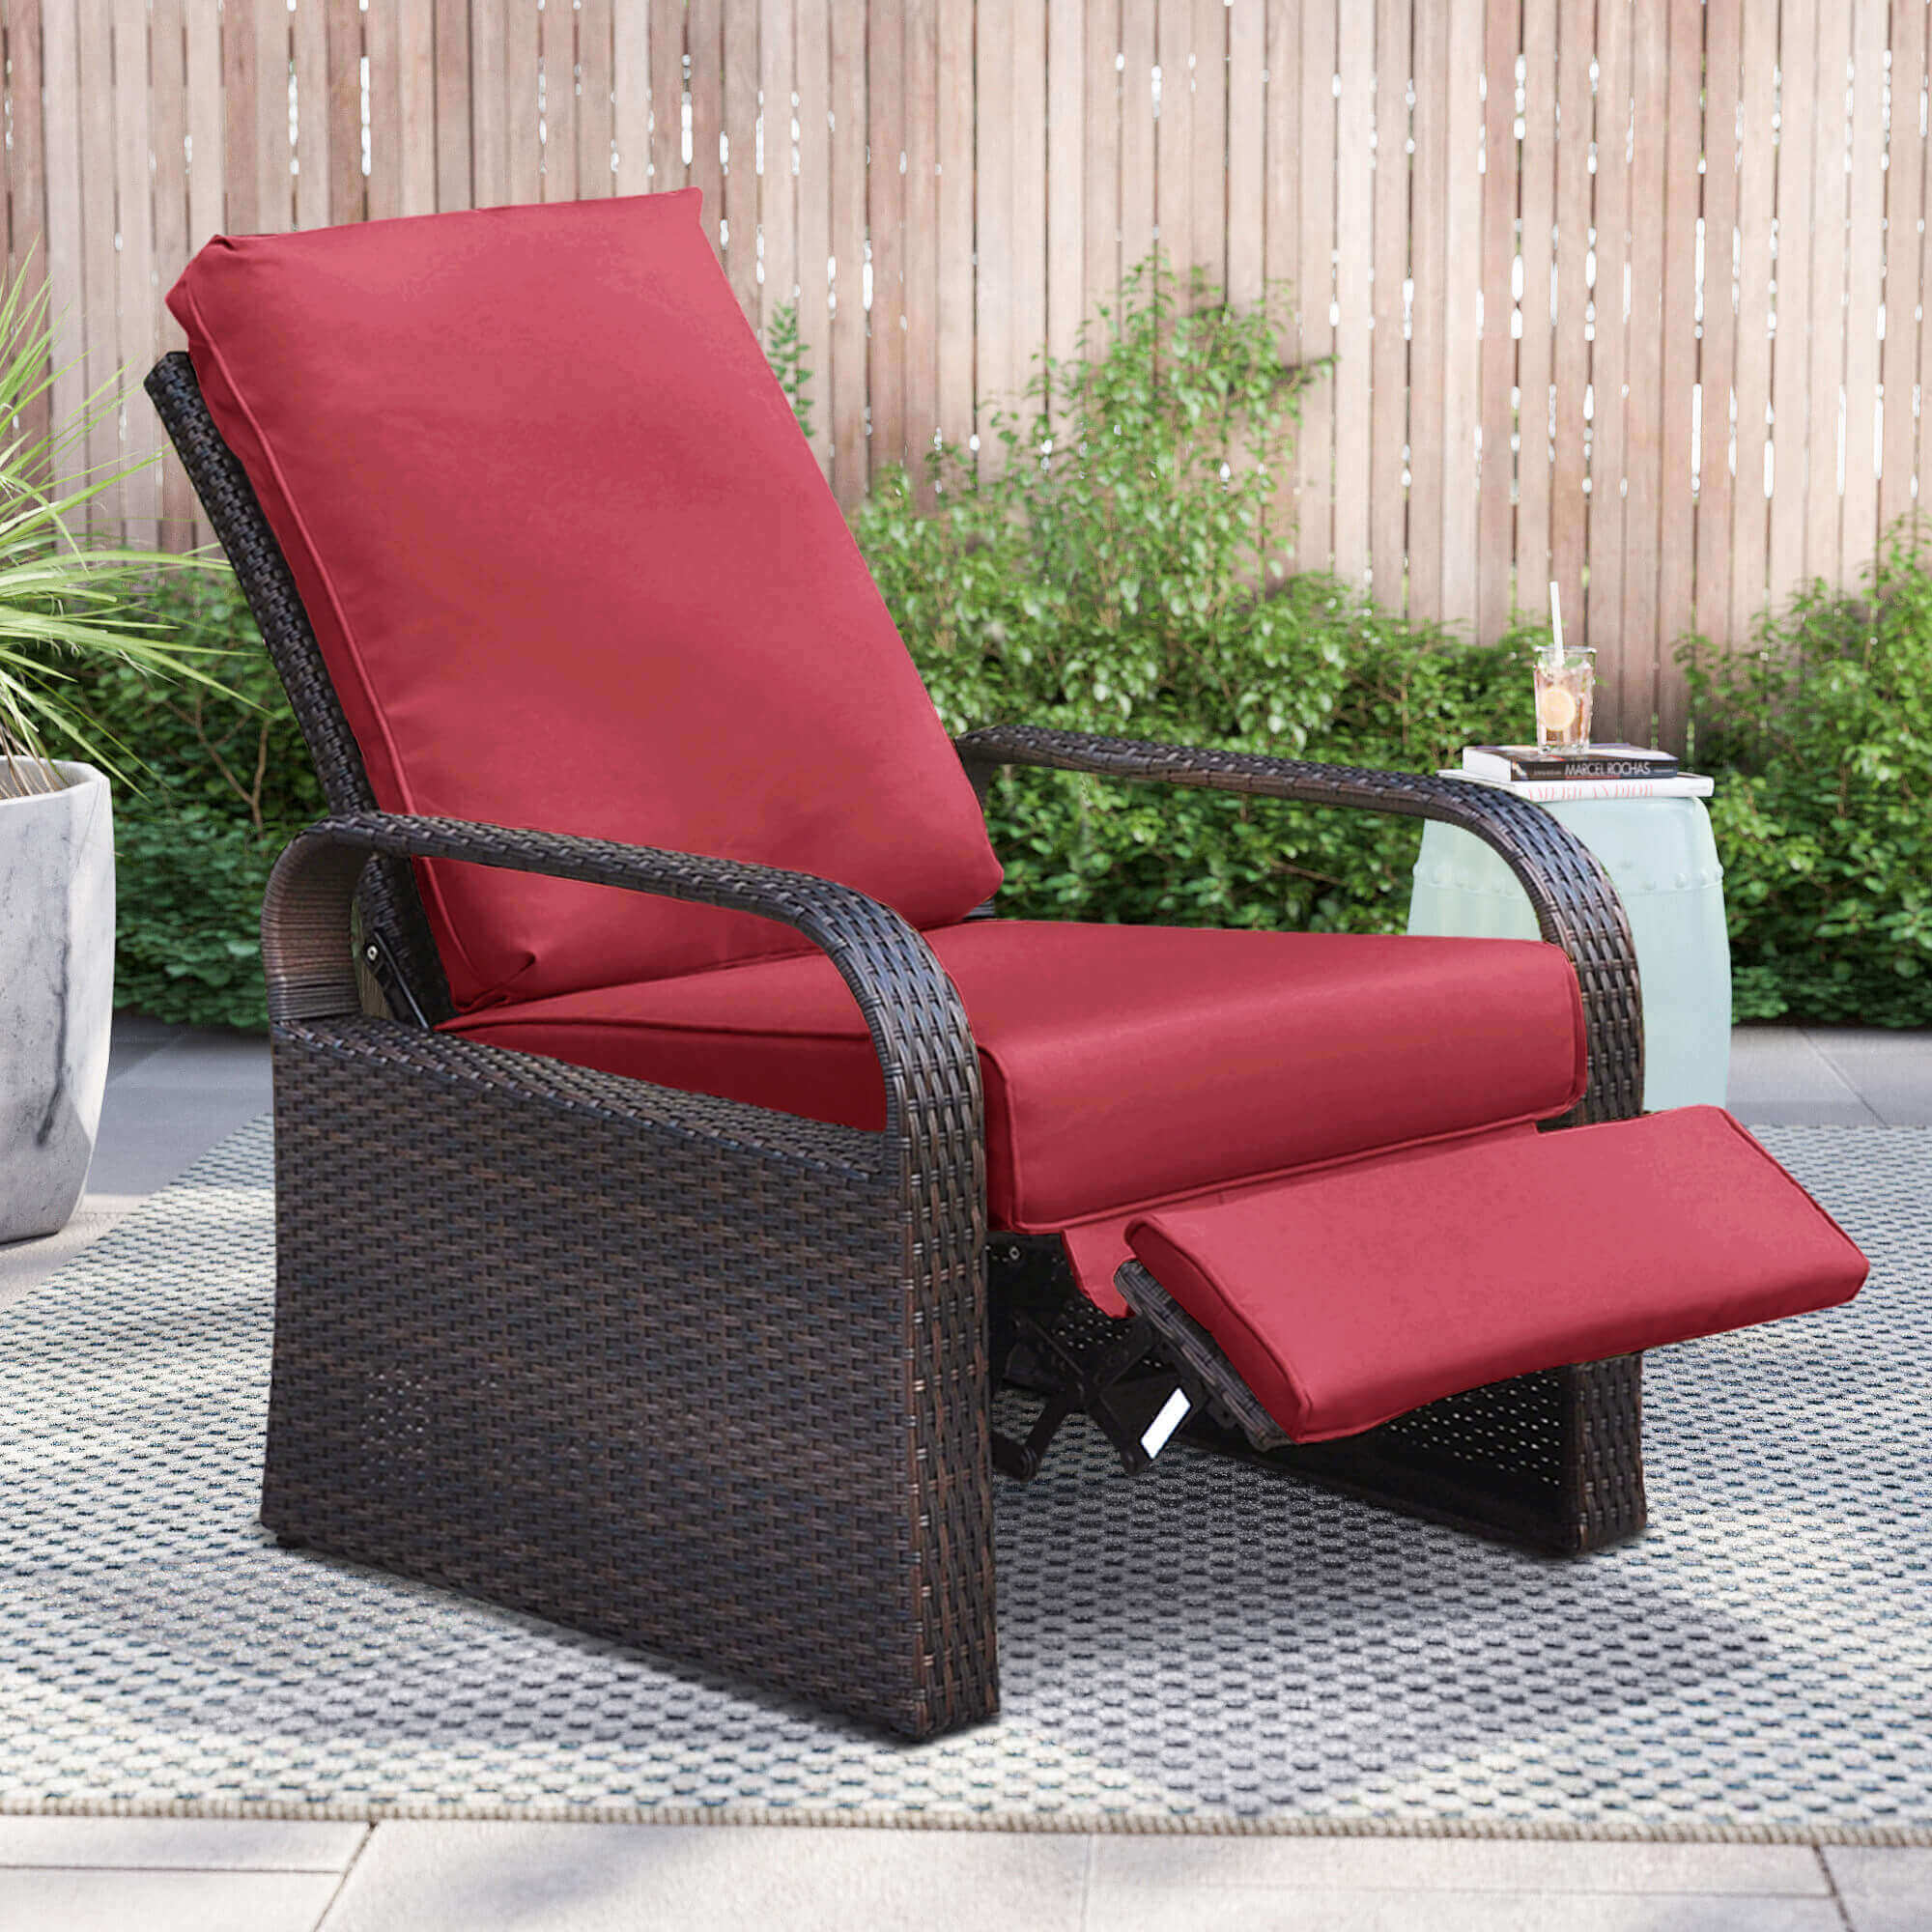 Skypatio Wicker Recliner, Outdoor Recliner Chair